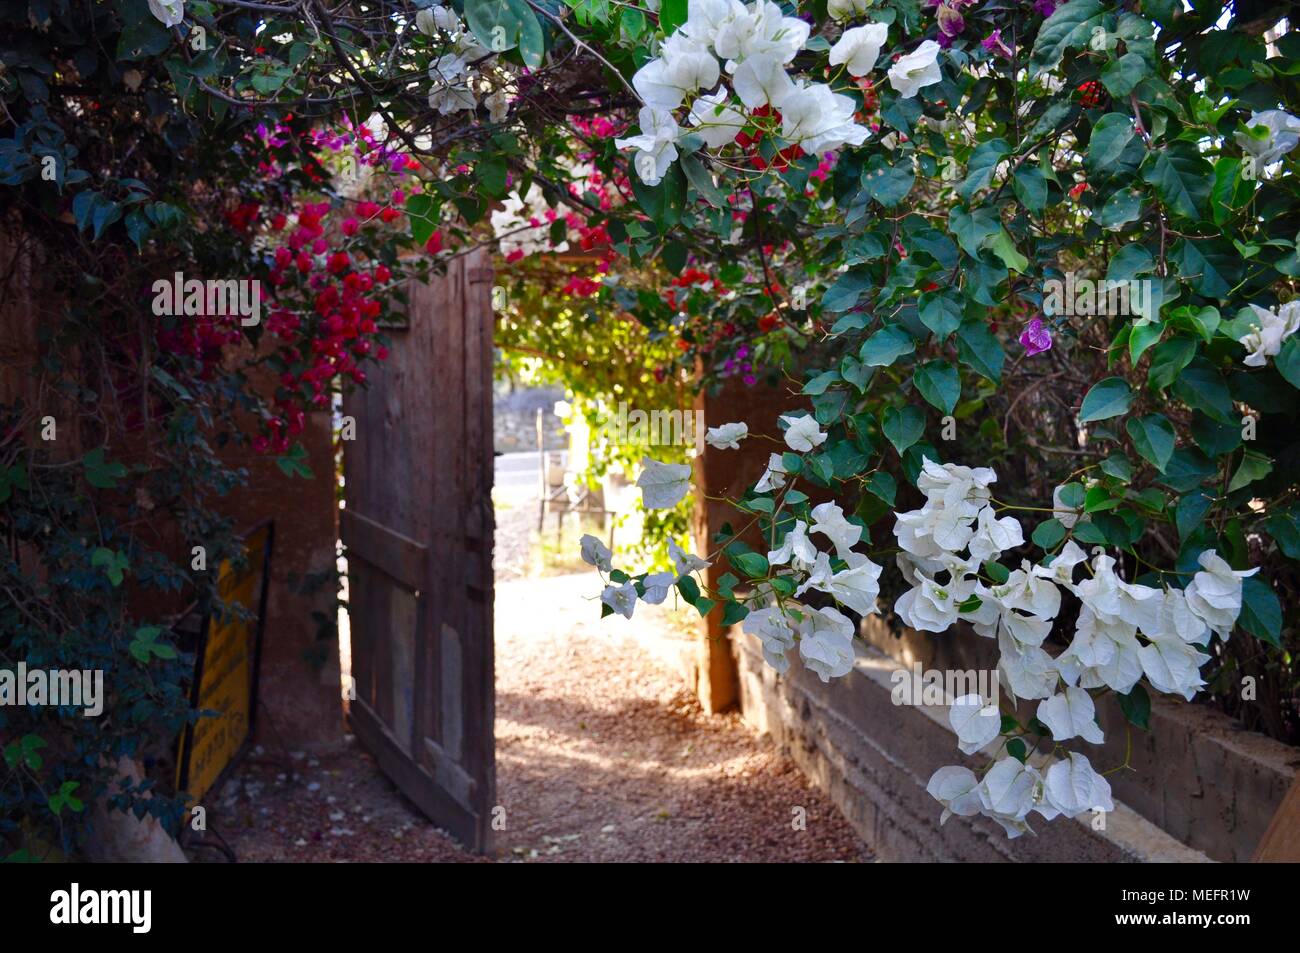 Overgrown wooden door with wild flowers, Tunisia Stock Photo